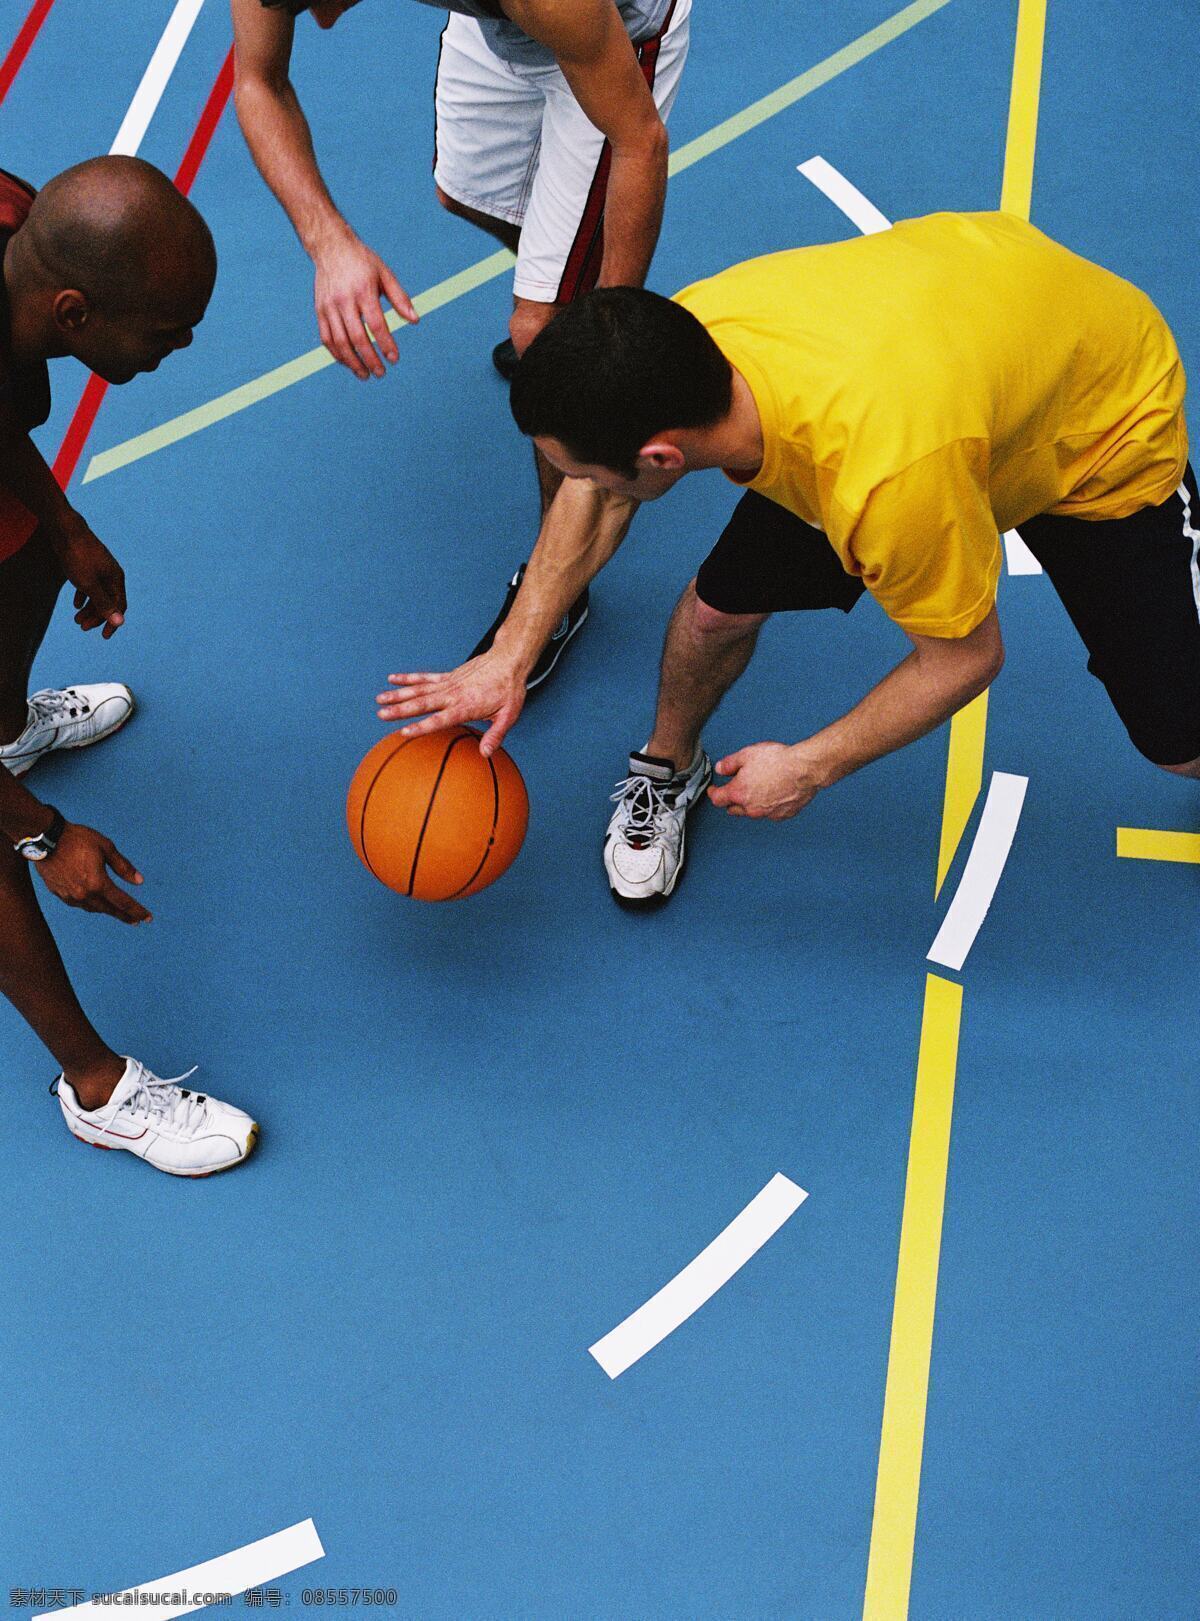 玩篮球的男人 国外运动 运动人物 运动素材 运动 体育 运动员 篮球 体育运动 生活百科 蓝色